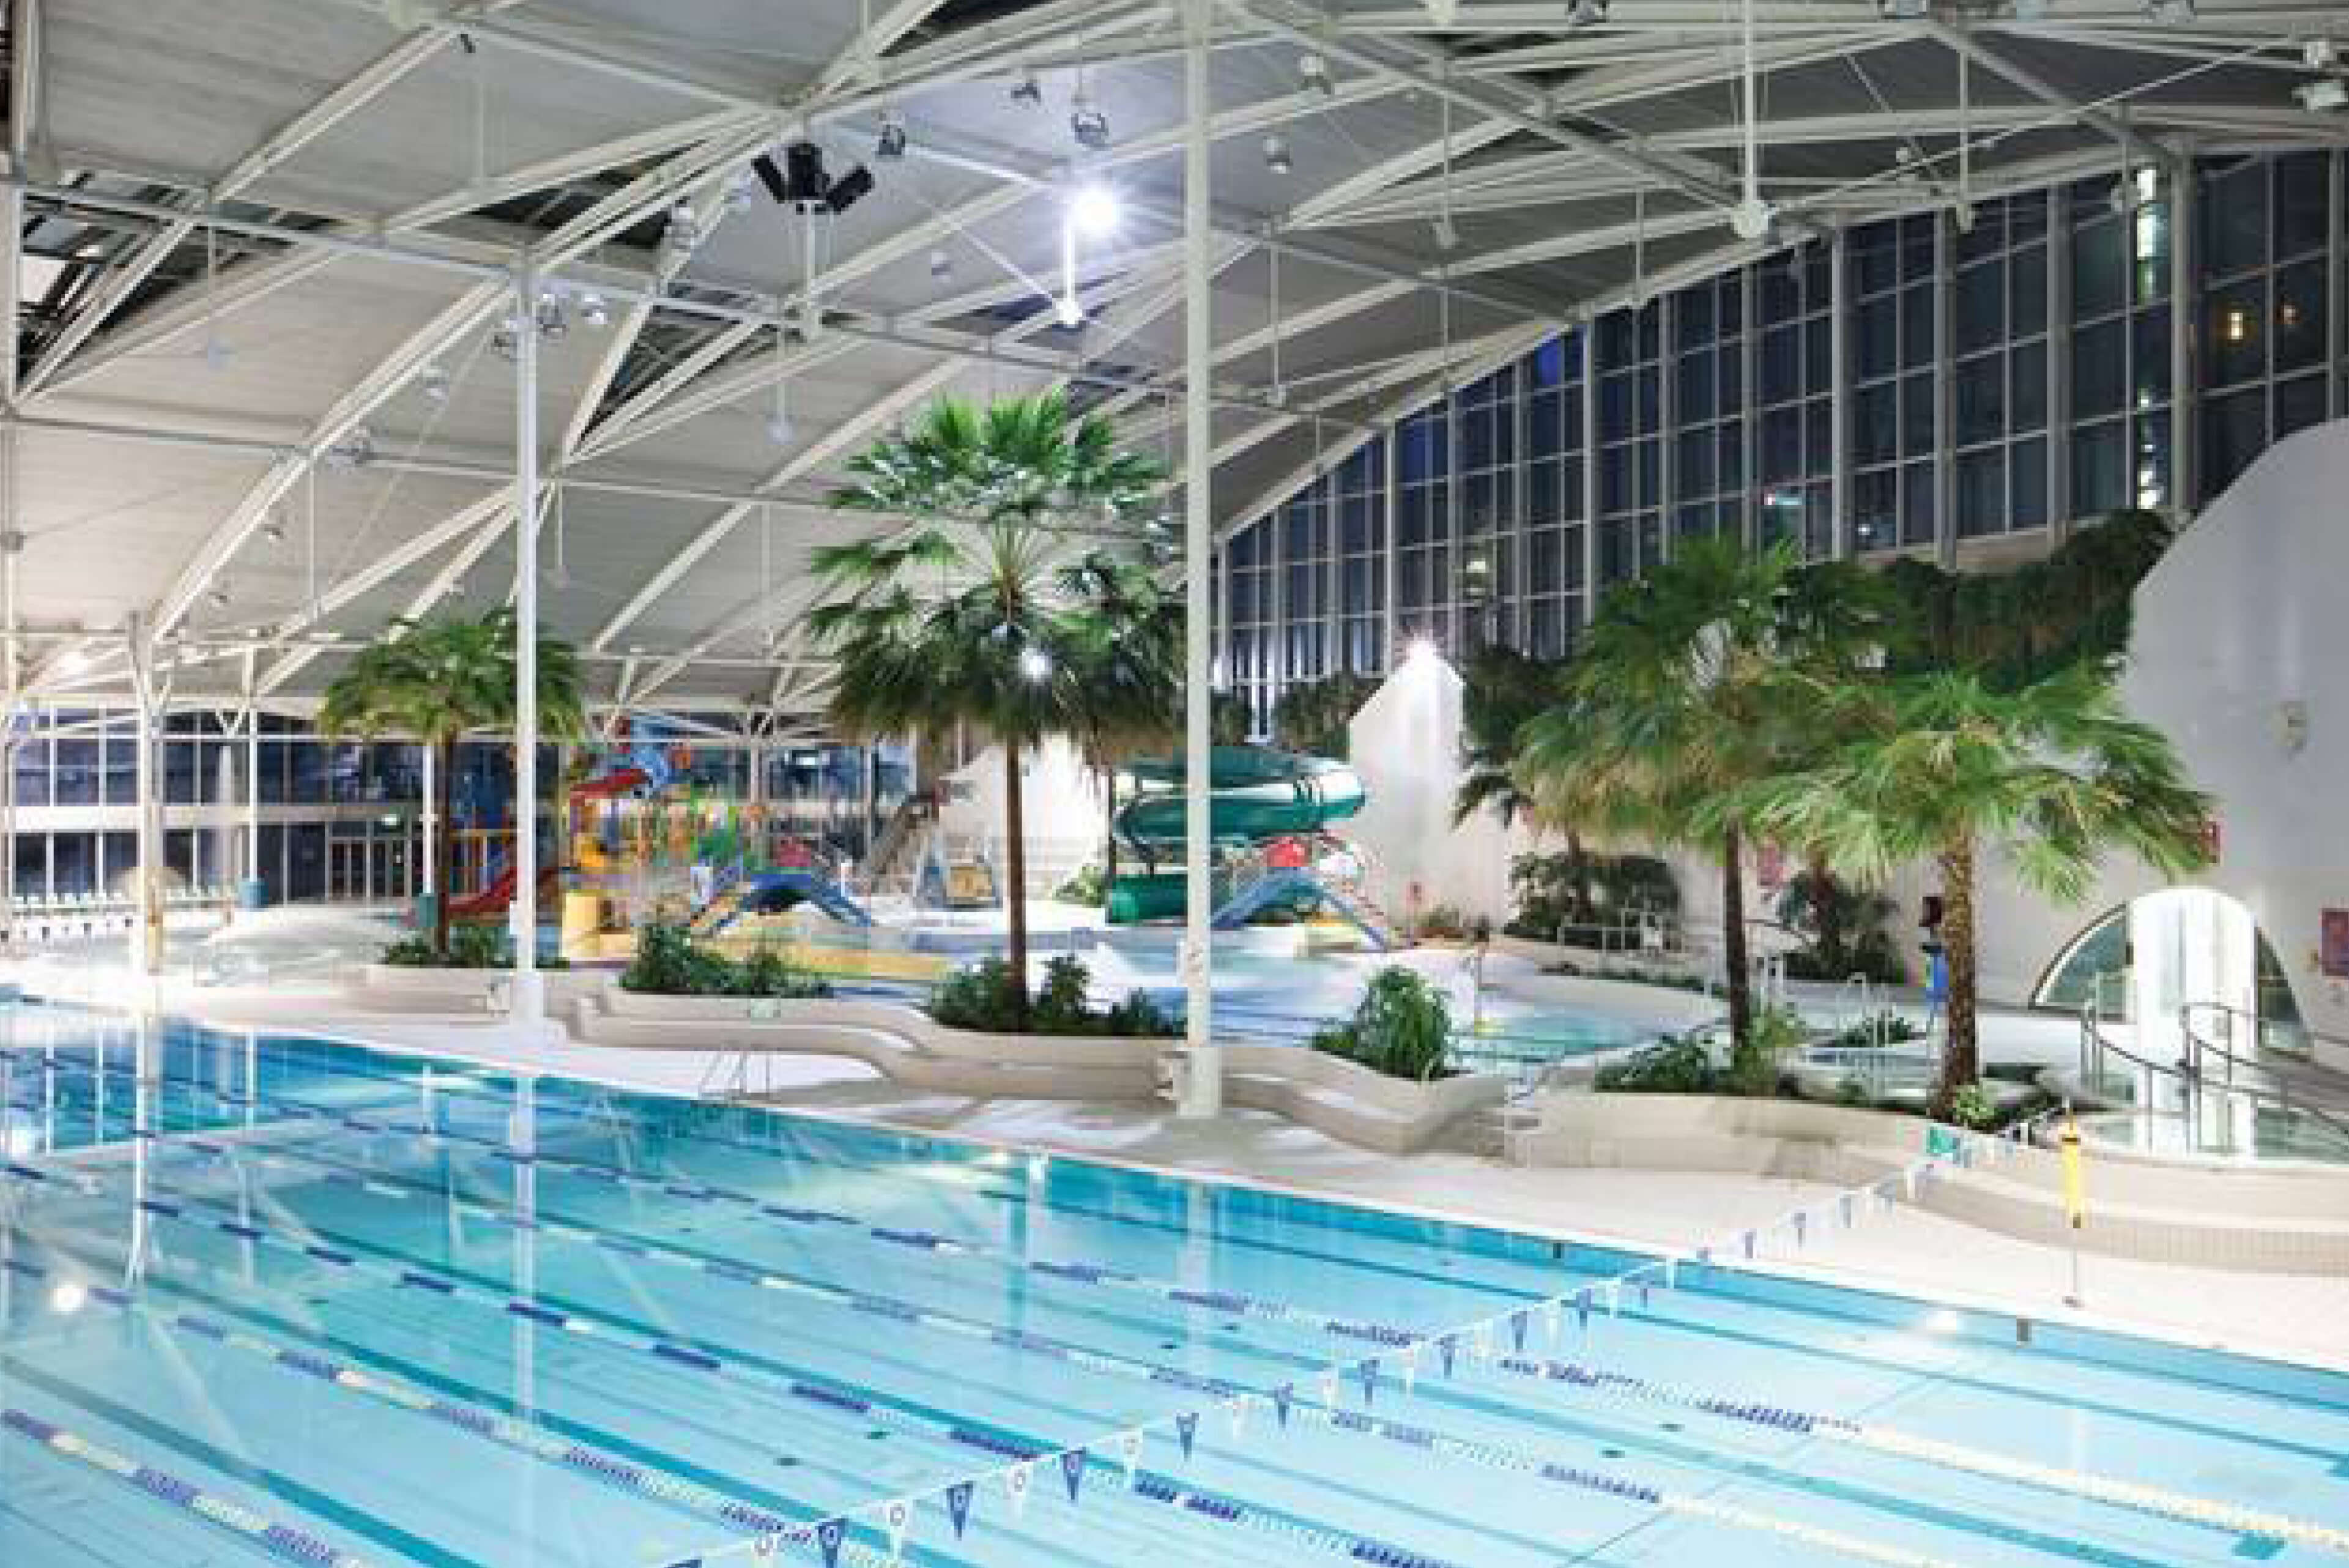 2 aeriel view pool sopa aquatic centre taylor construction refurbishment live environments